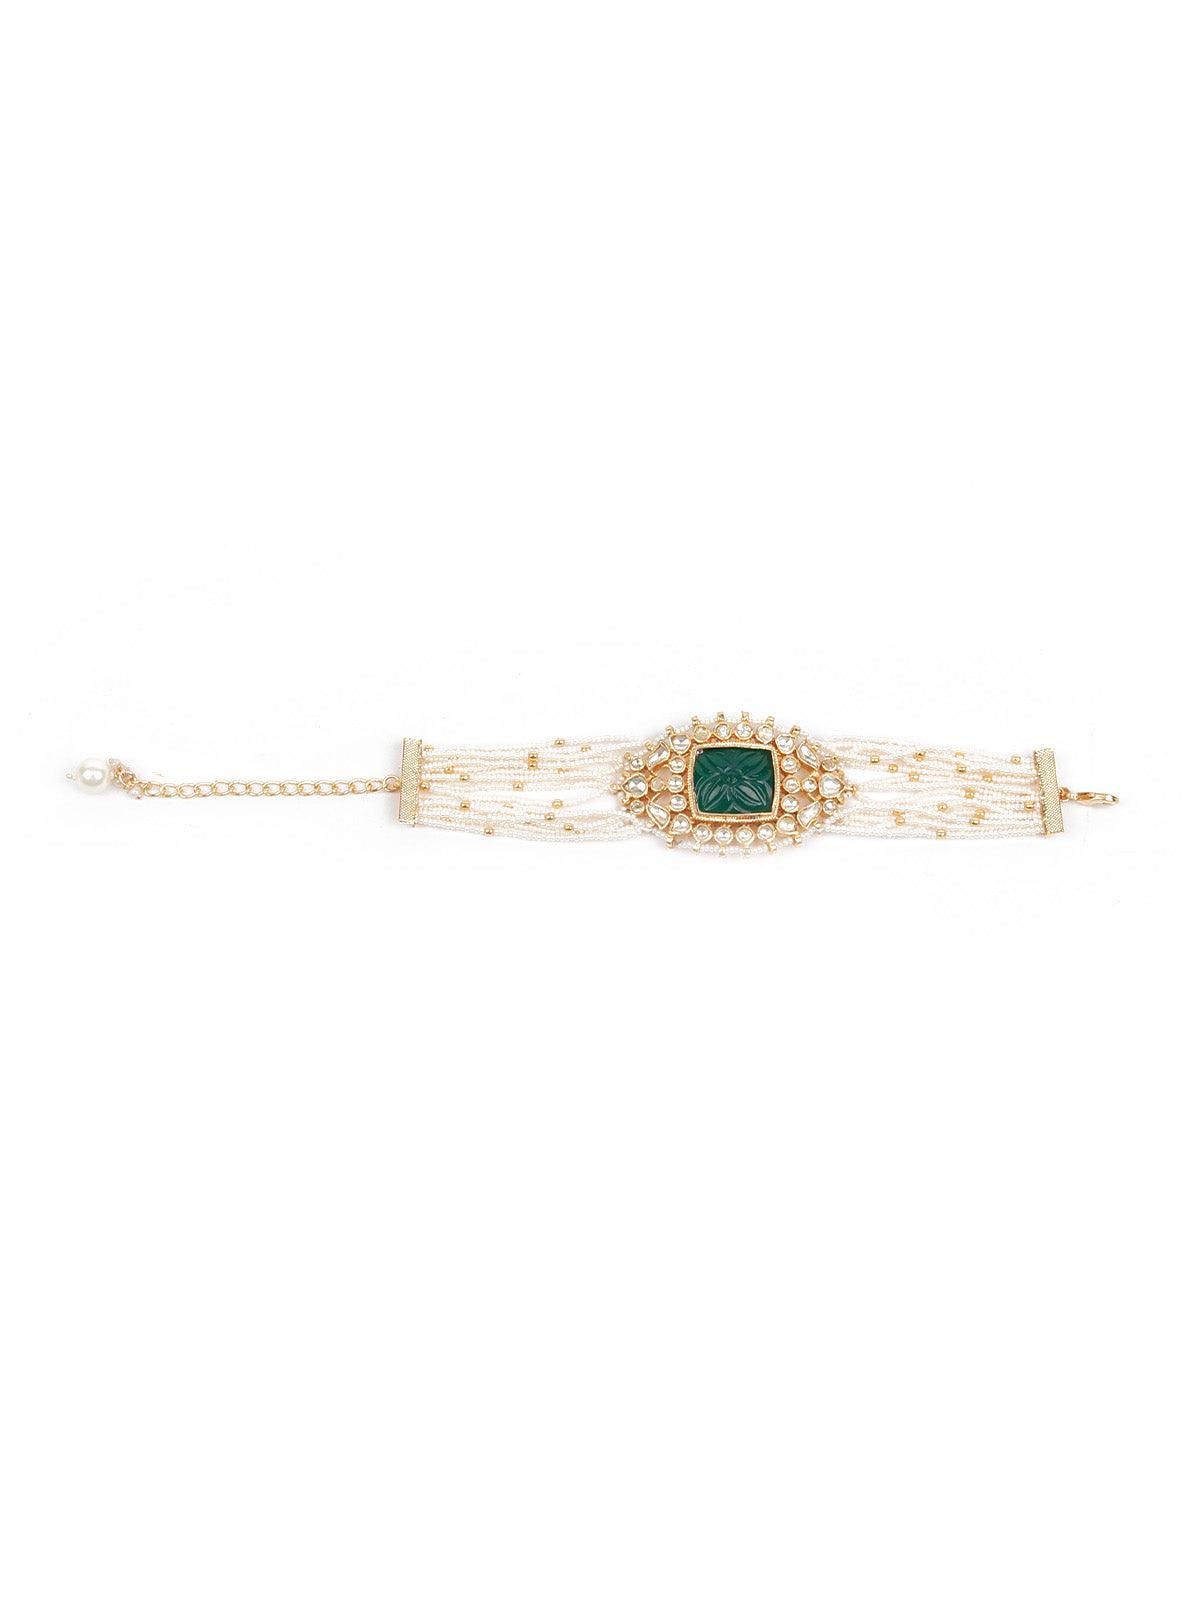 Stunning Embellished Gold Bracelet - Odette